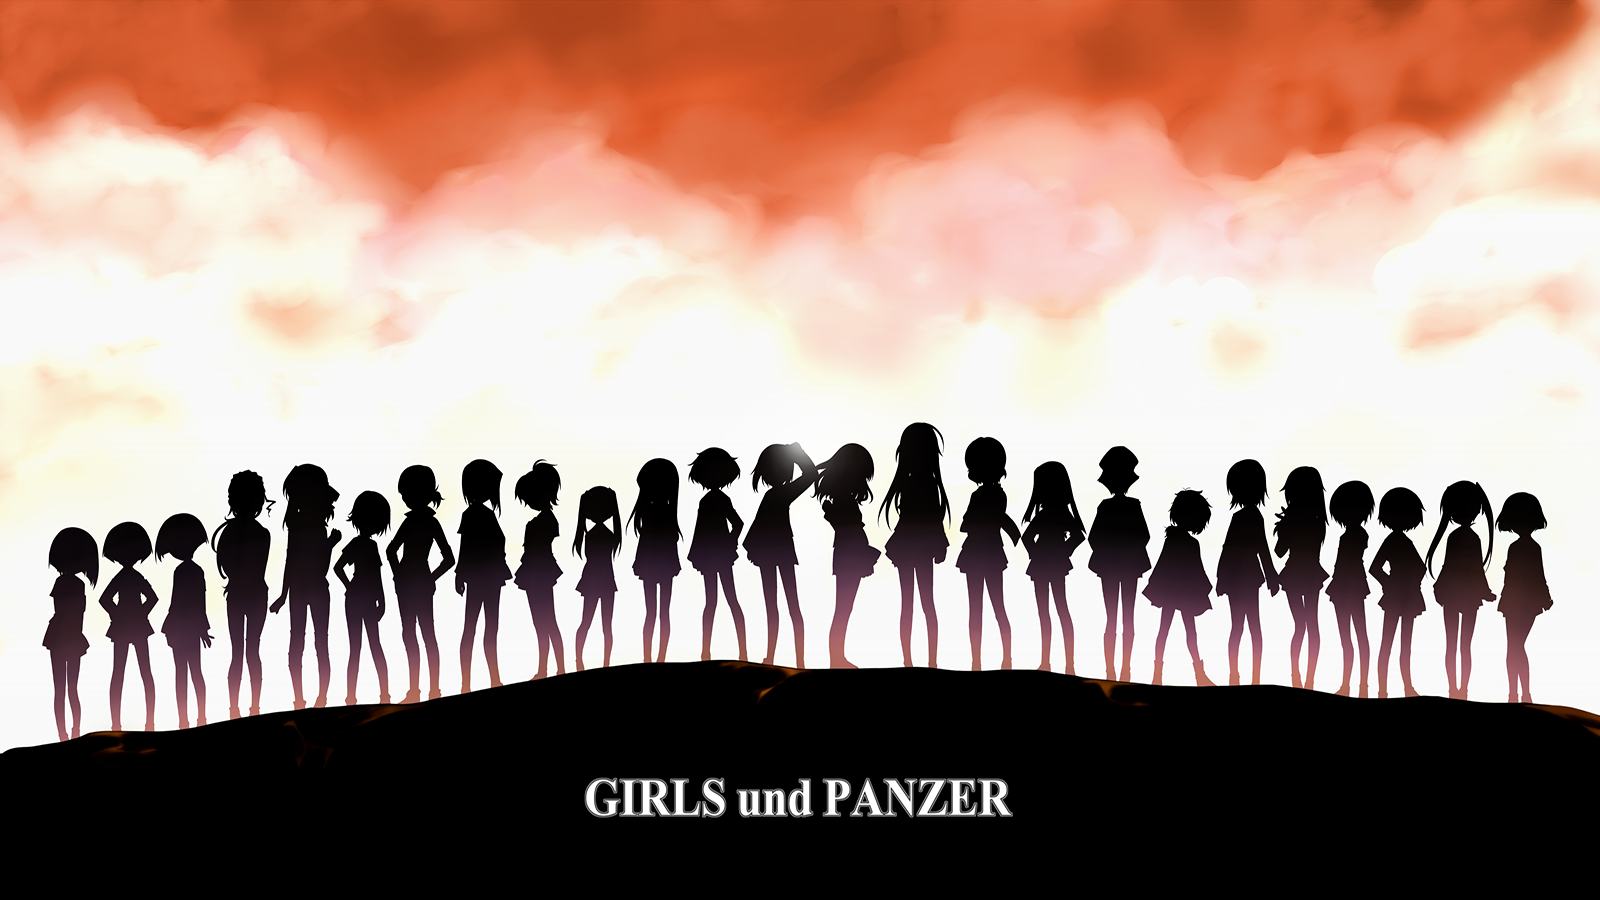 Anime 1600x900 Girls und Panzer anime girls silhouette